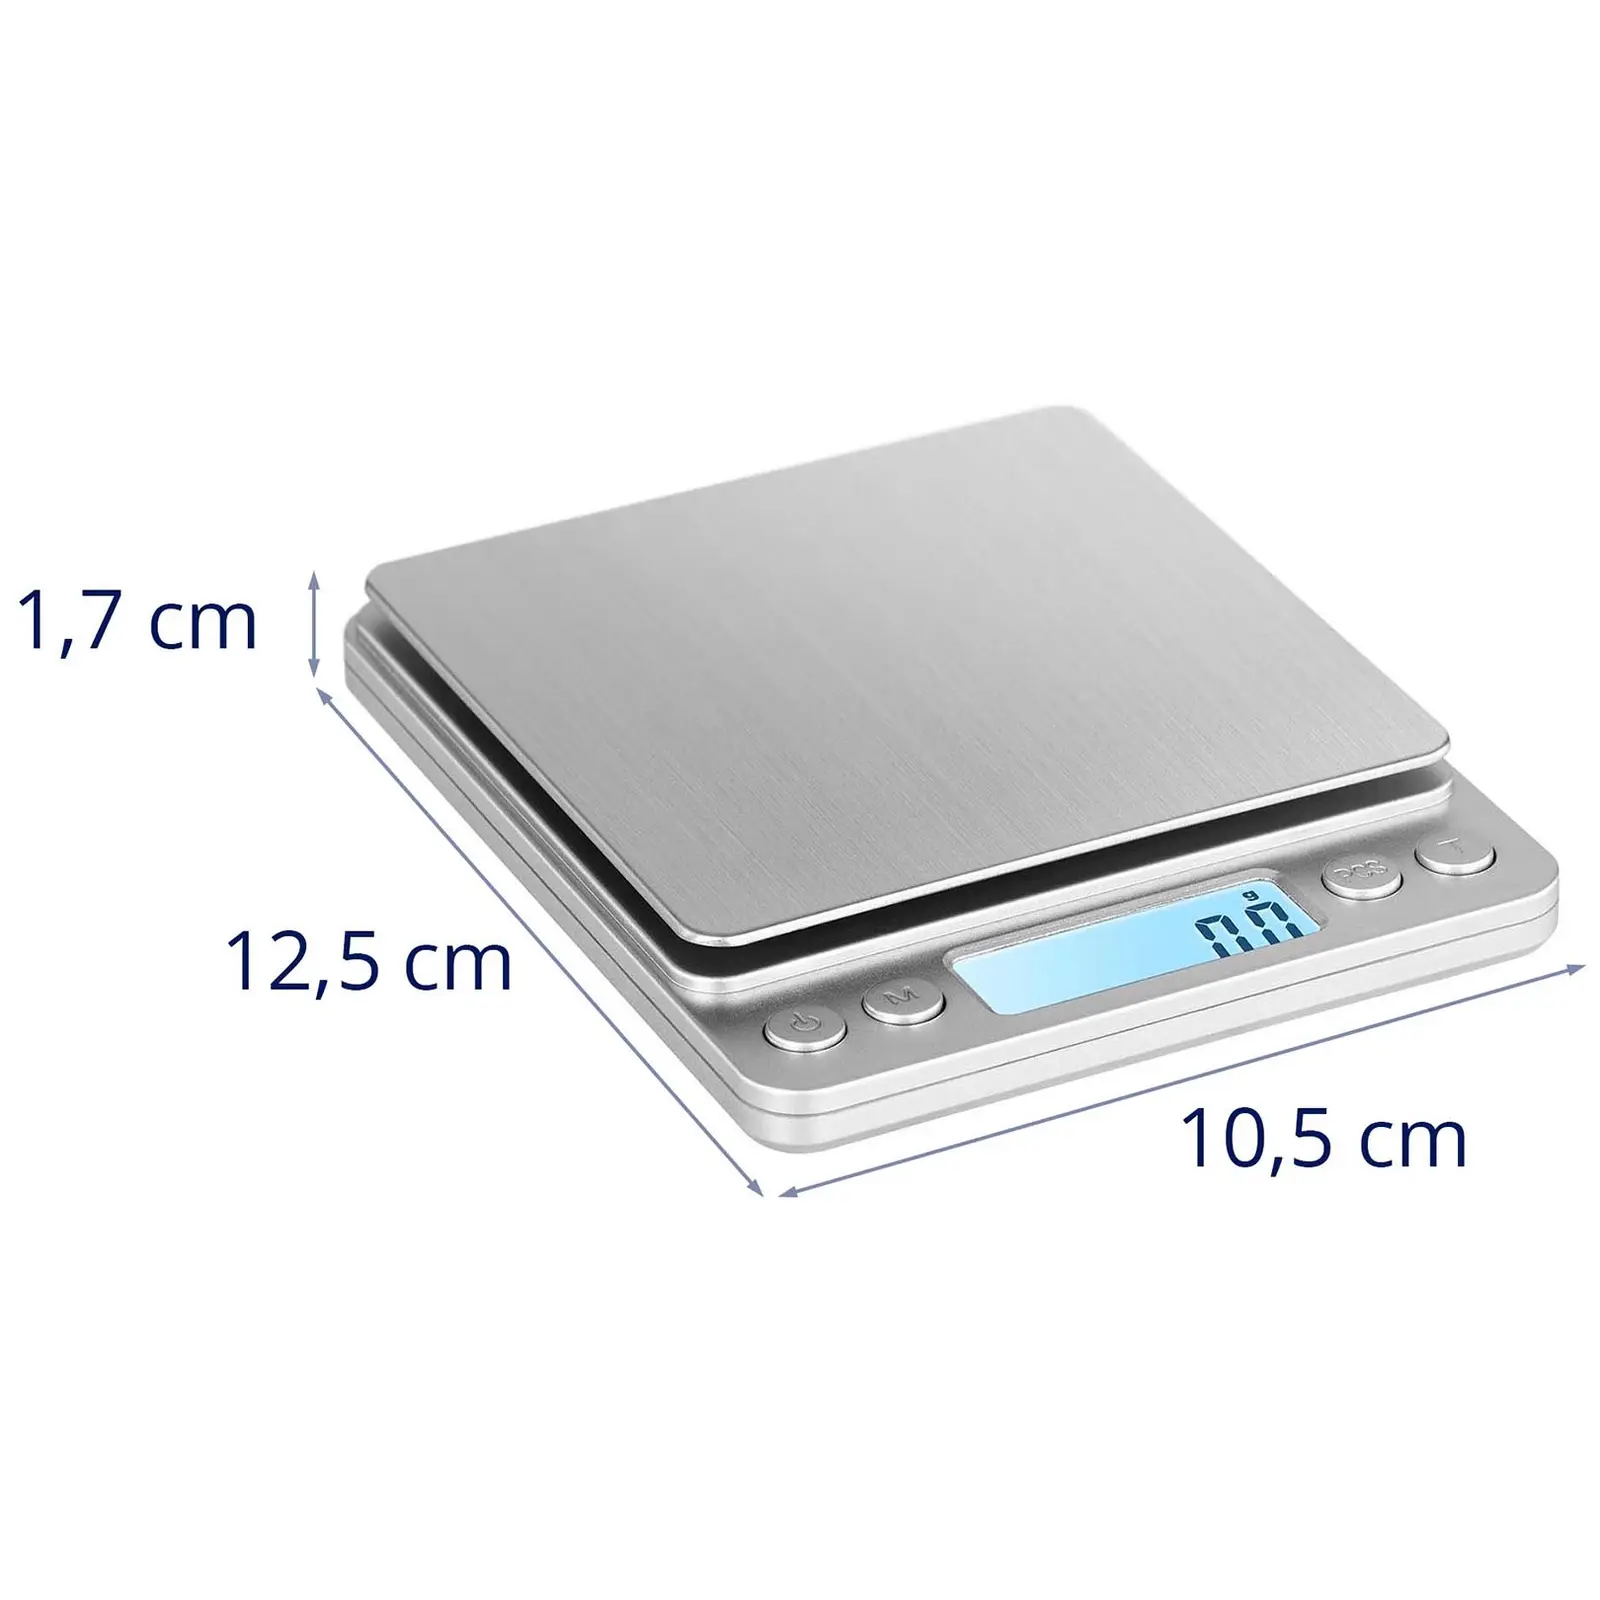 Digital bordvægt - 3 kg / 0,1 g - Basic